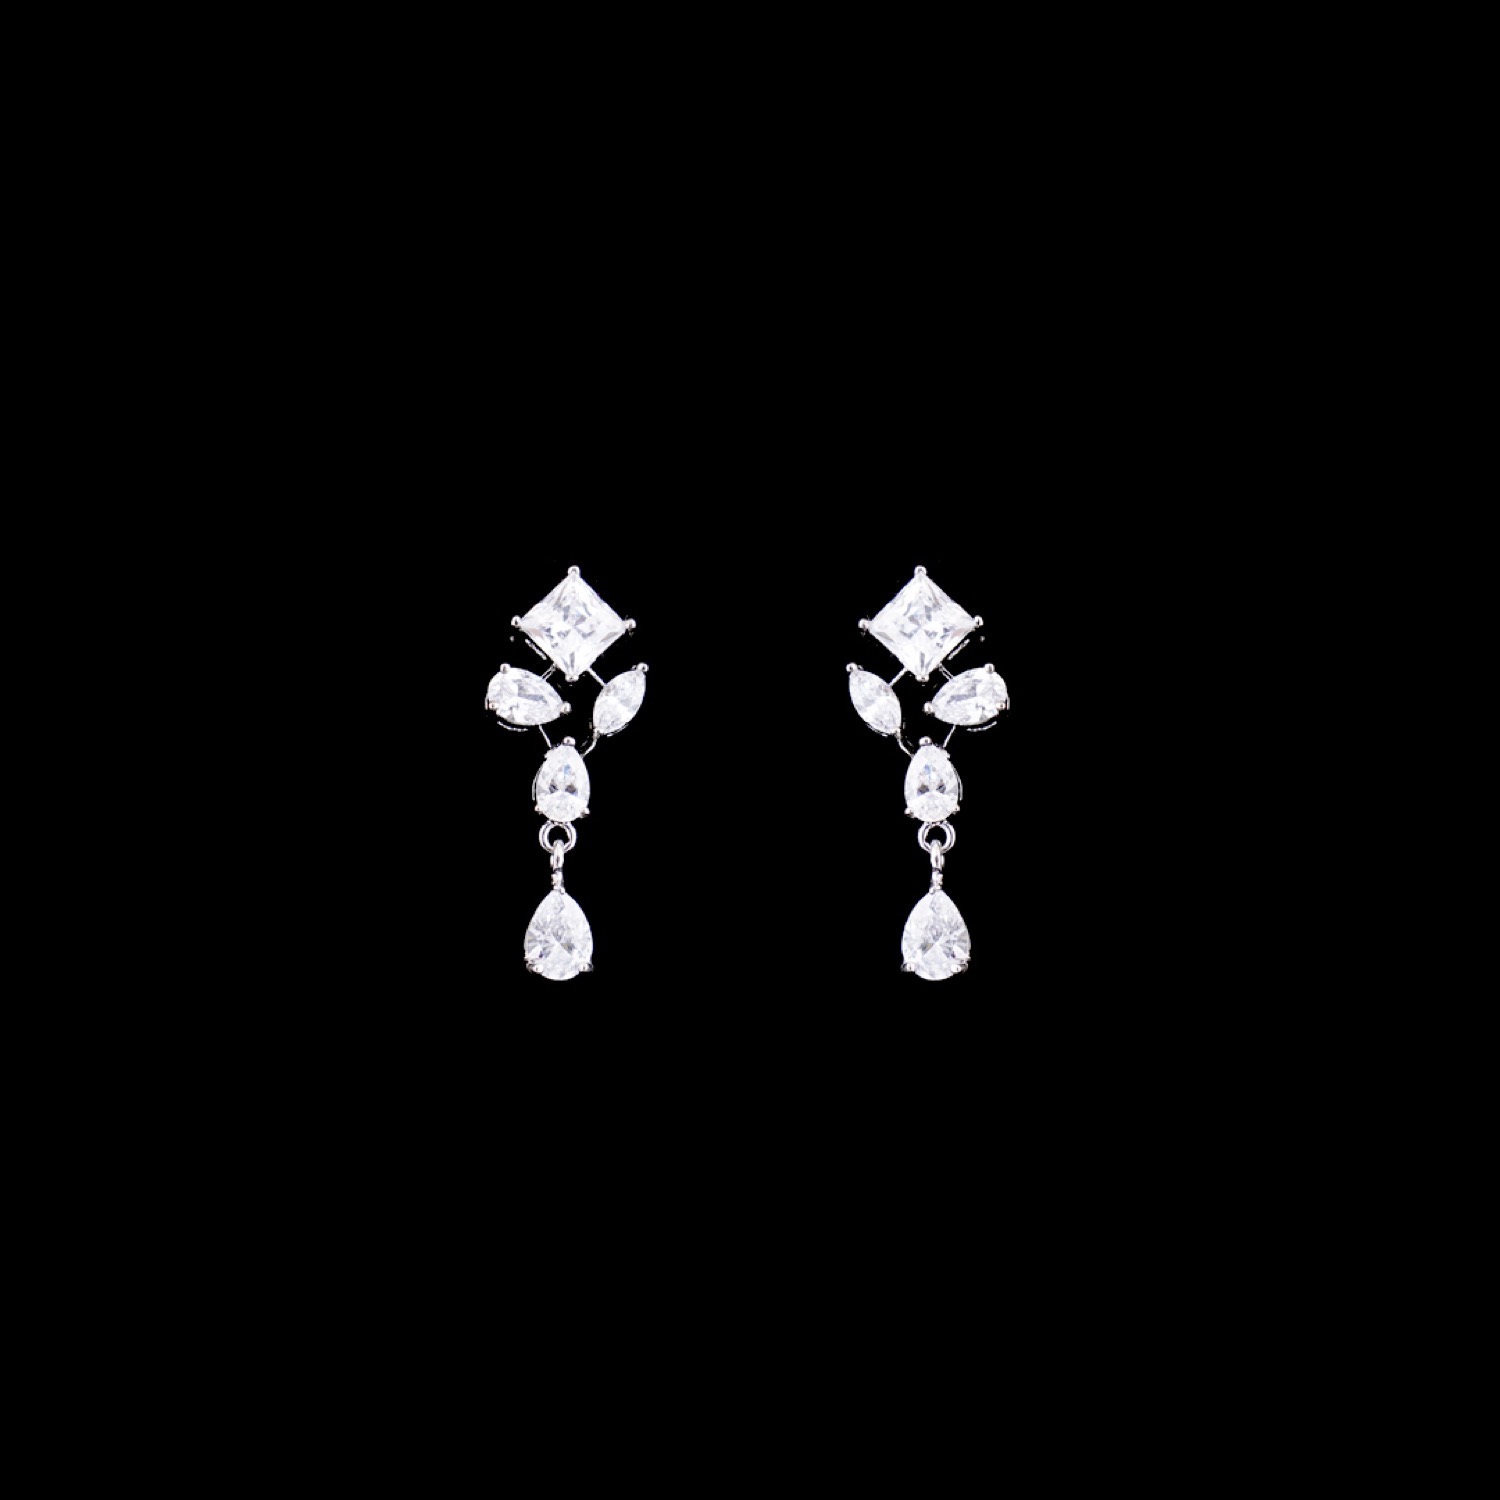 varam_swarovski_white_stone_silver_earrings_5-1